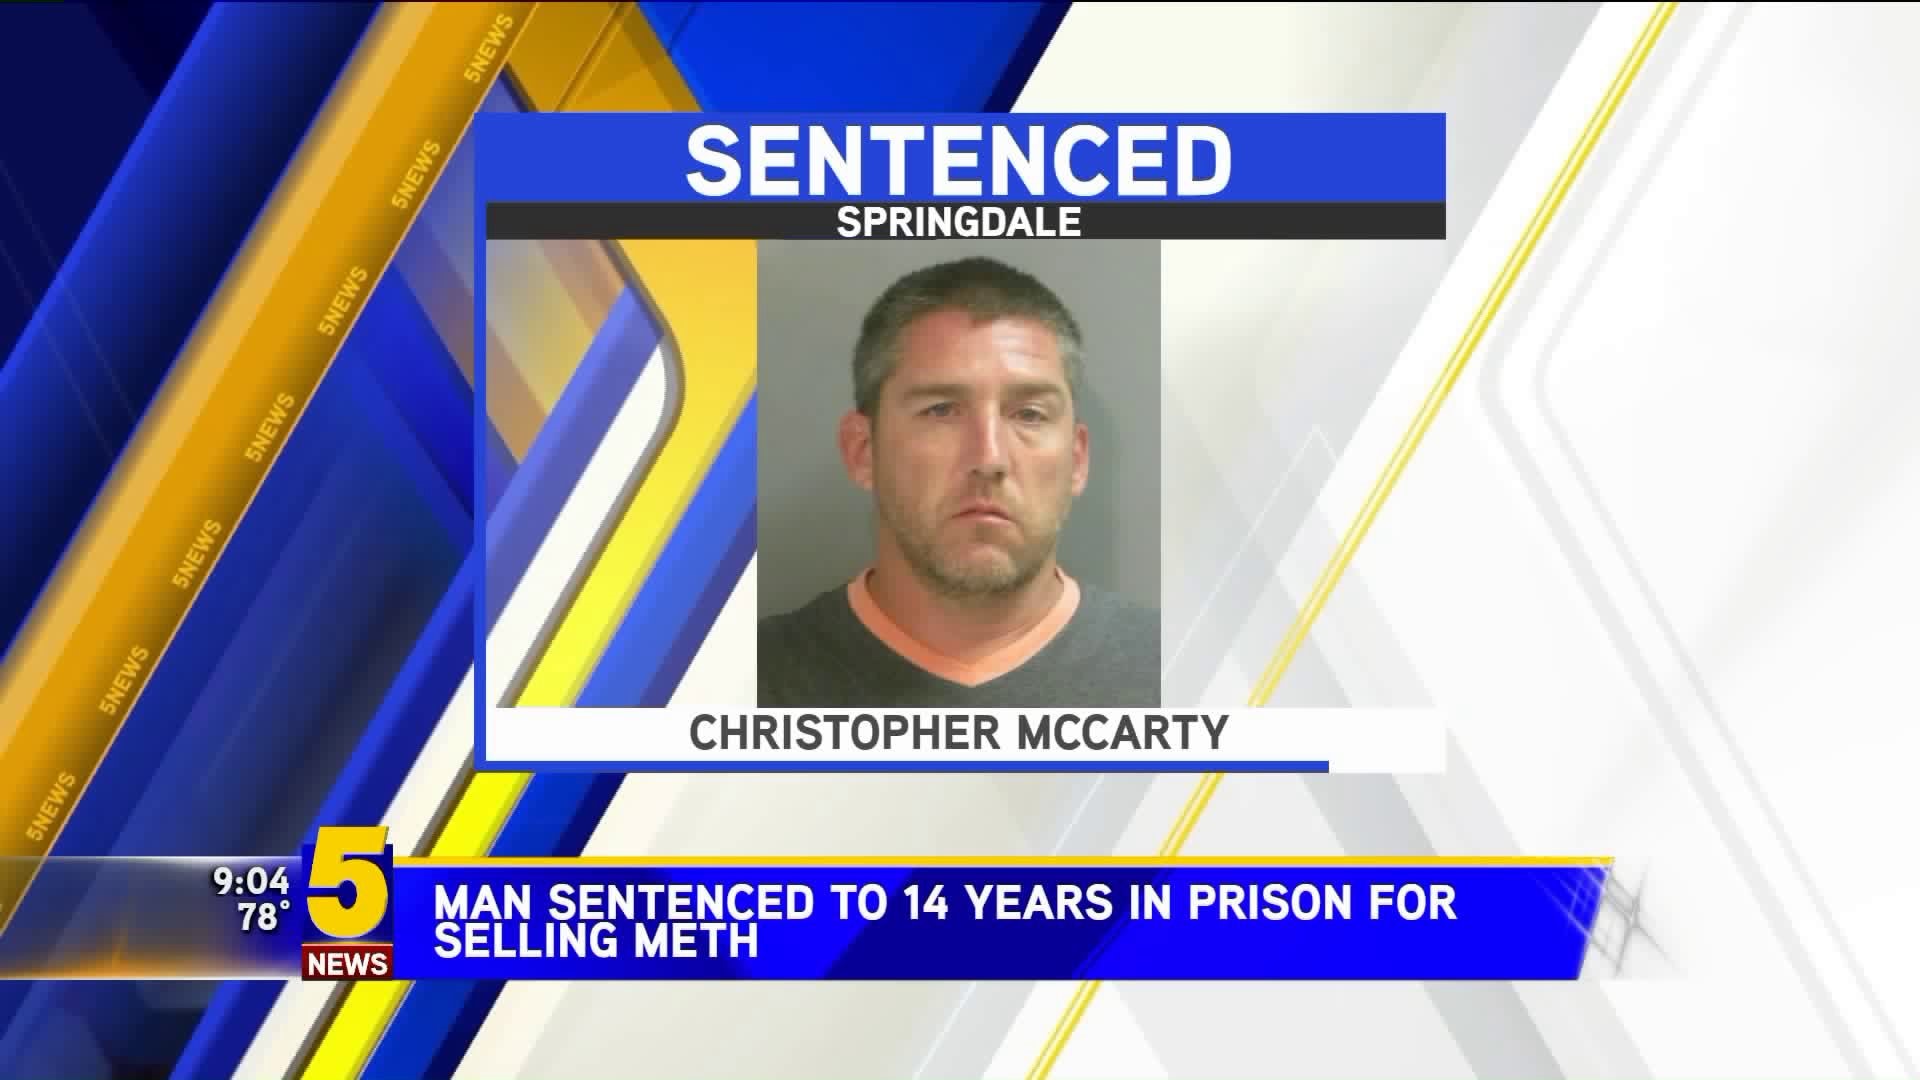 Springdale Man Sentenced To 14 Years for Selling Meth